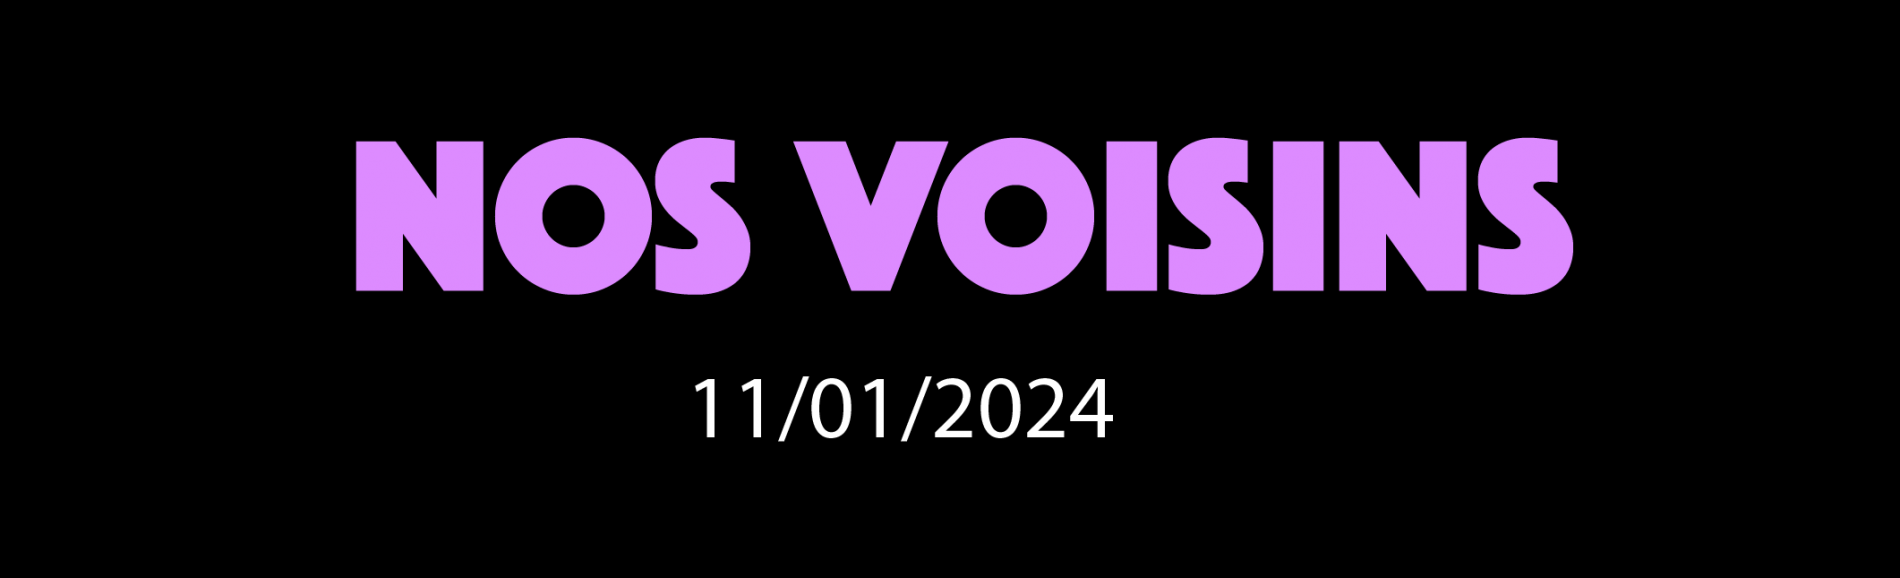 NOS VOISINS - 11/01/2024